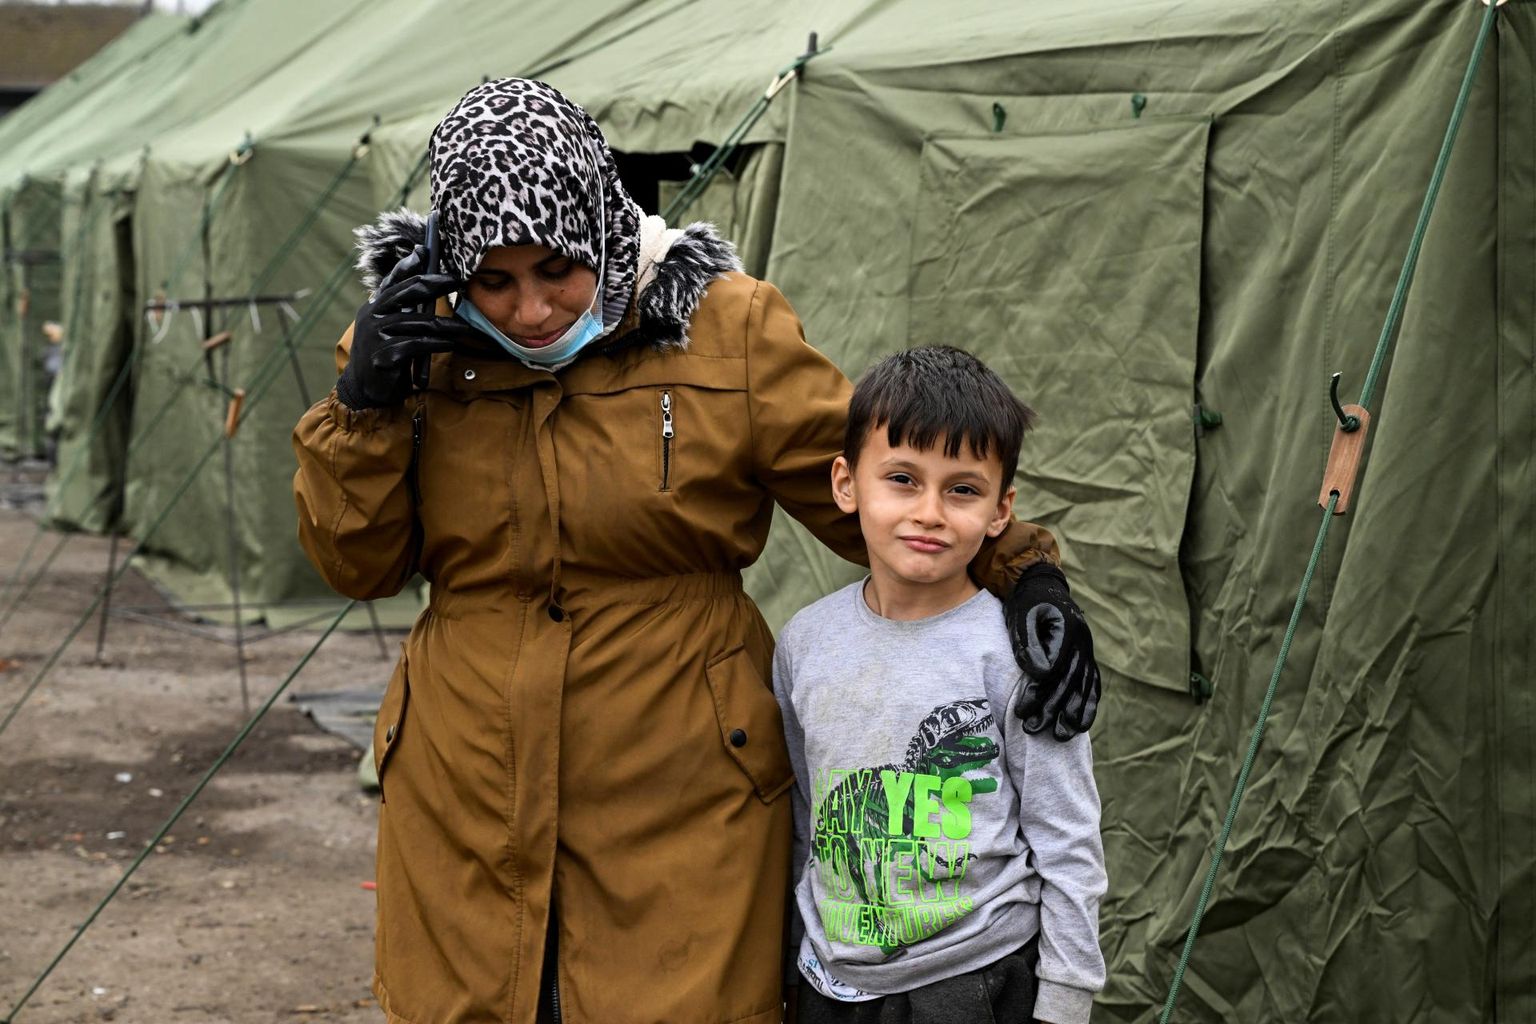 Naine ja poiss põgenikele rajatud telklaagris Slovakkias Kútys mullu novembris.